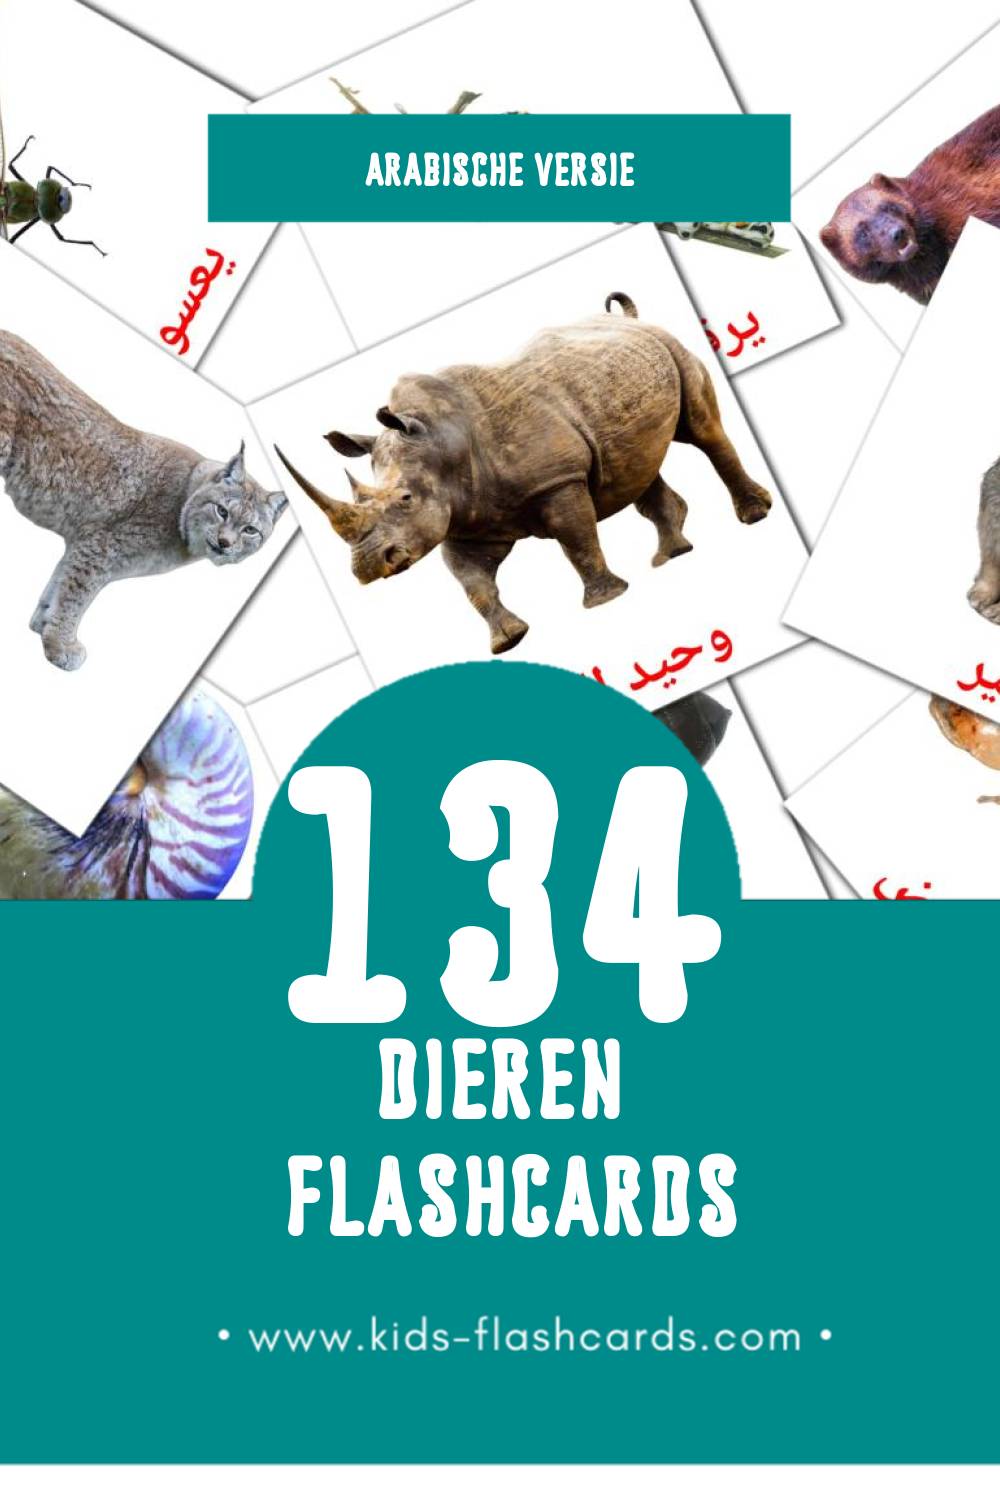 Visuele حيوانات برية Flashcards voor Kleuters (134 kaarten in het Arabisch)